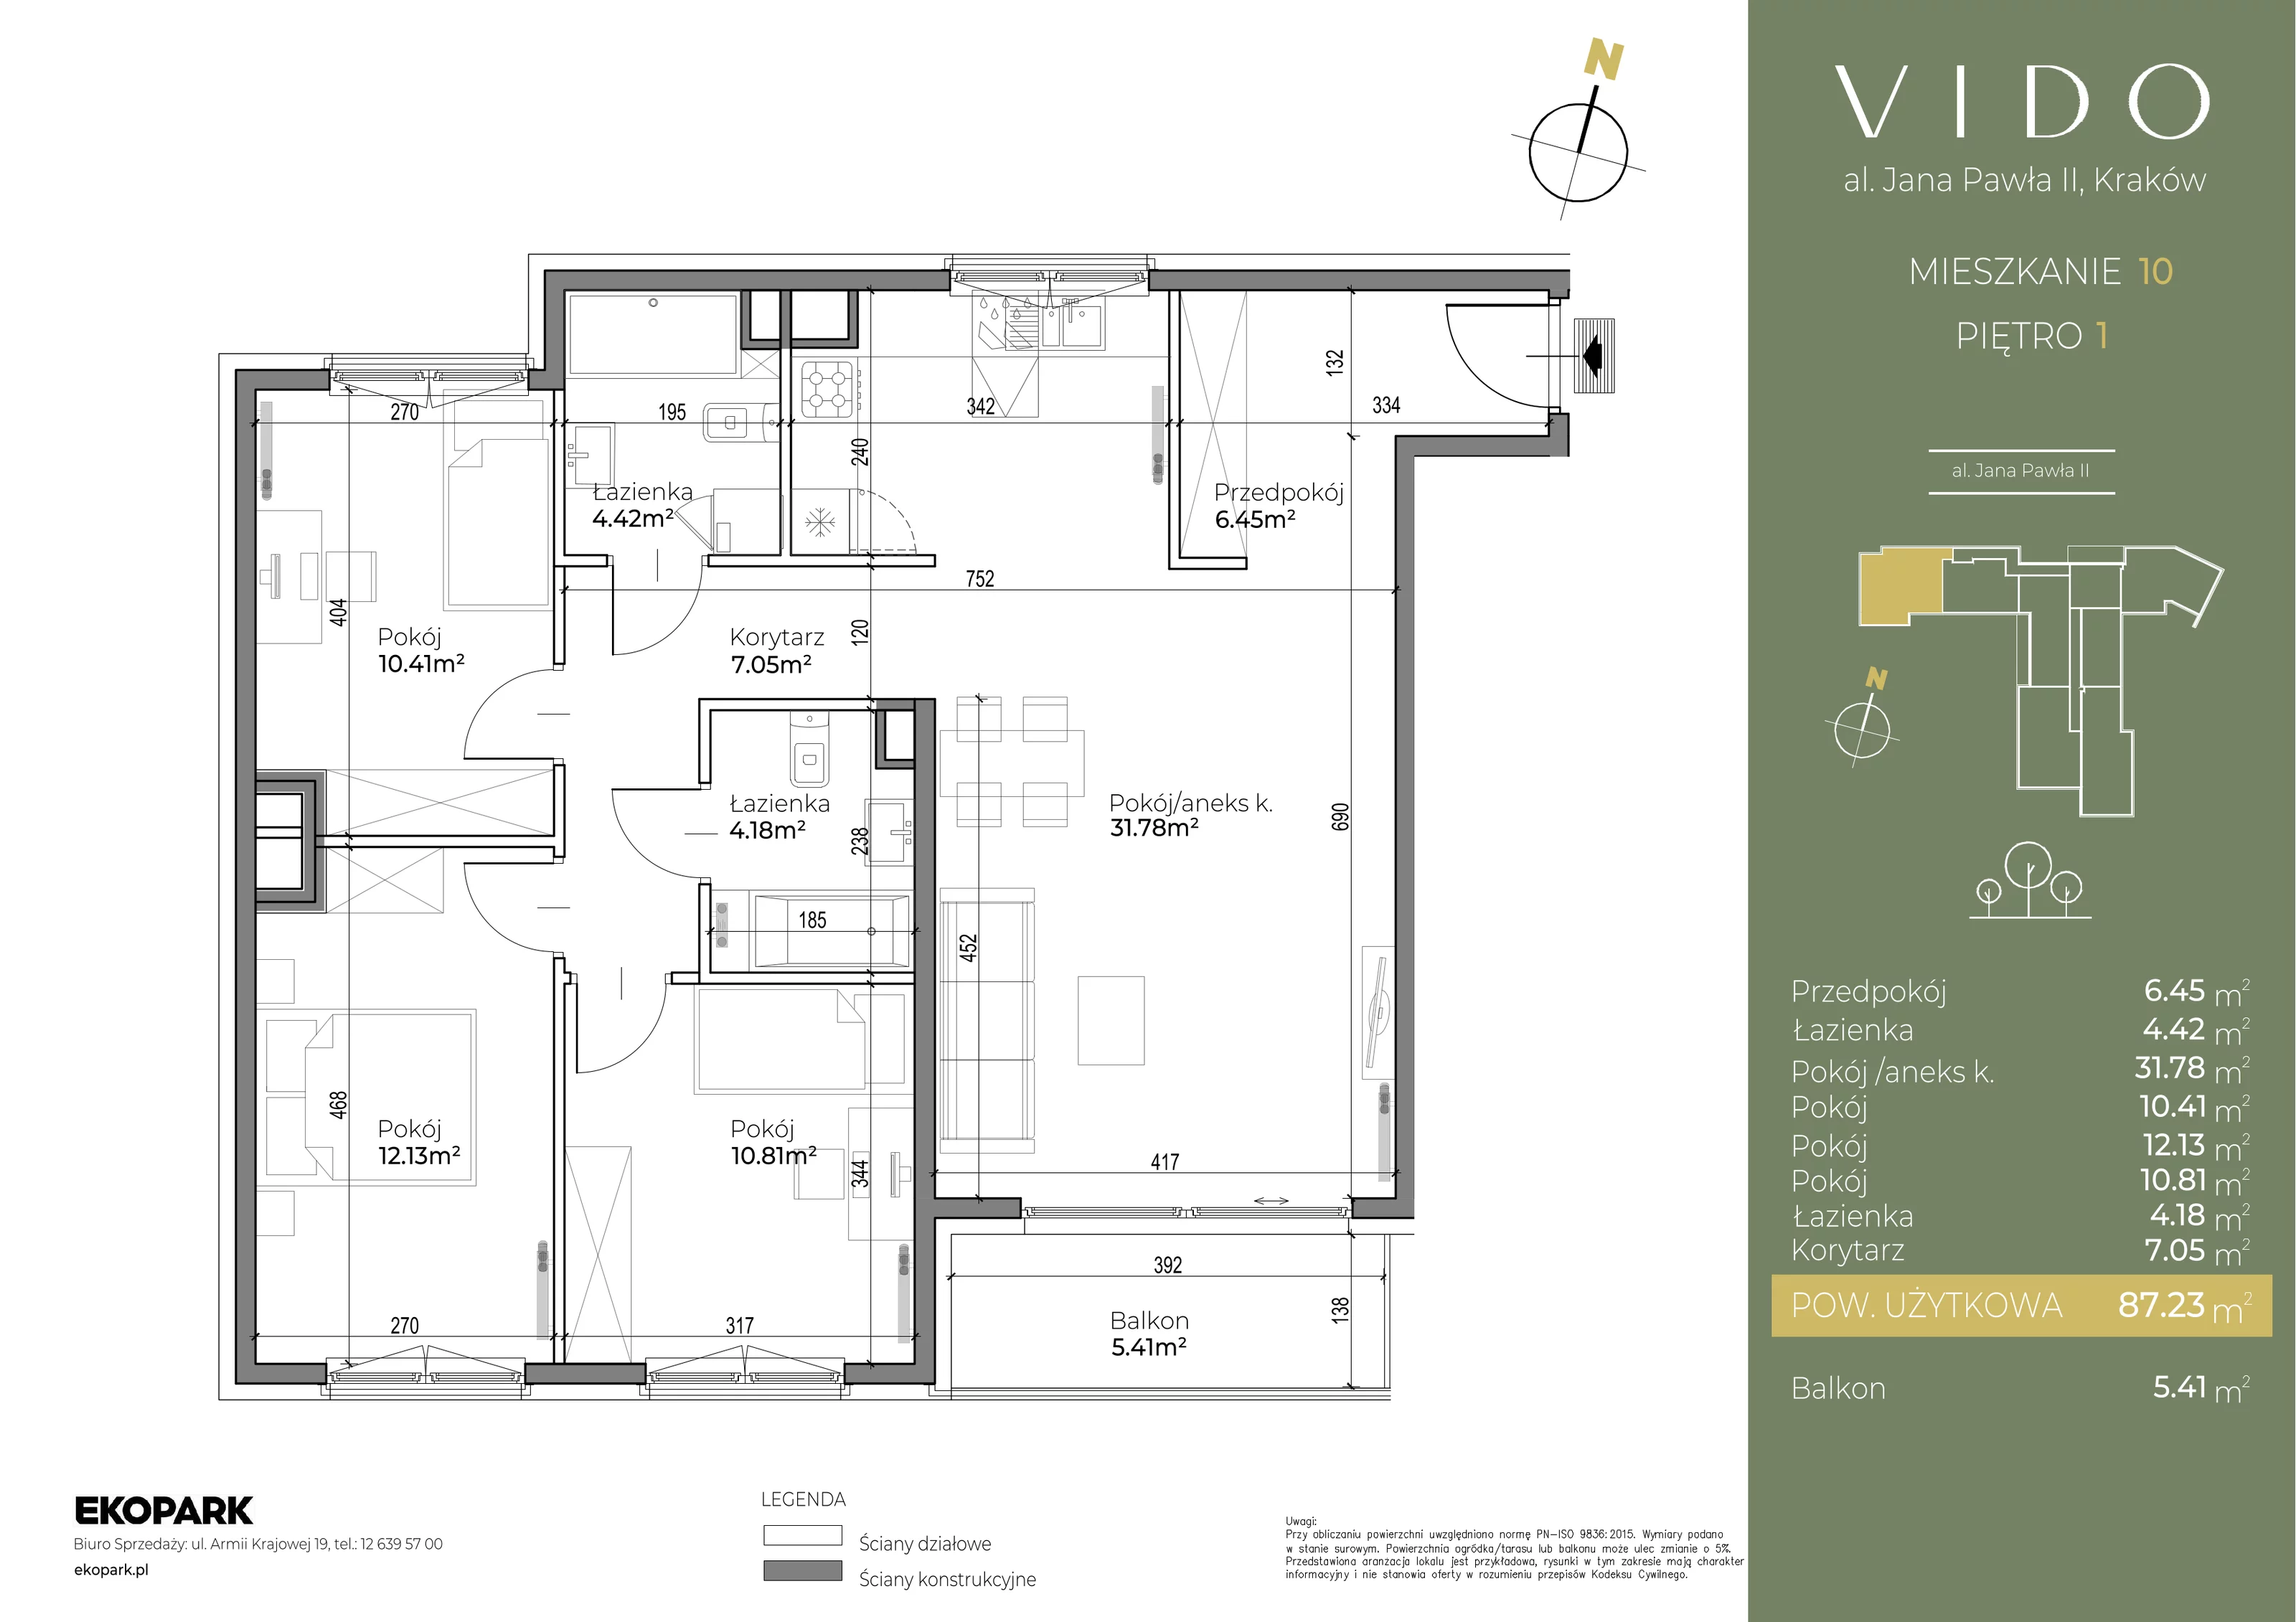 Mieszkanie 87,22 m², piętro 1, oferta nr M10, Vido, Kraków, Prądnik Czerwony, Aleja Jana Pawła II 52